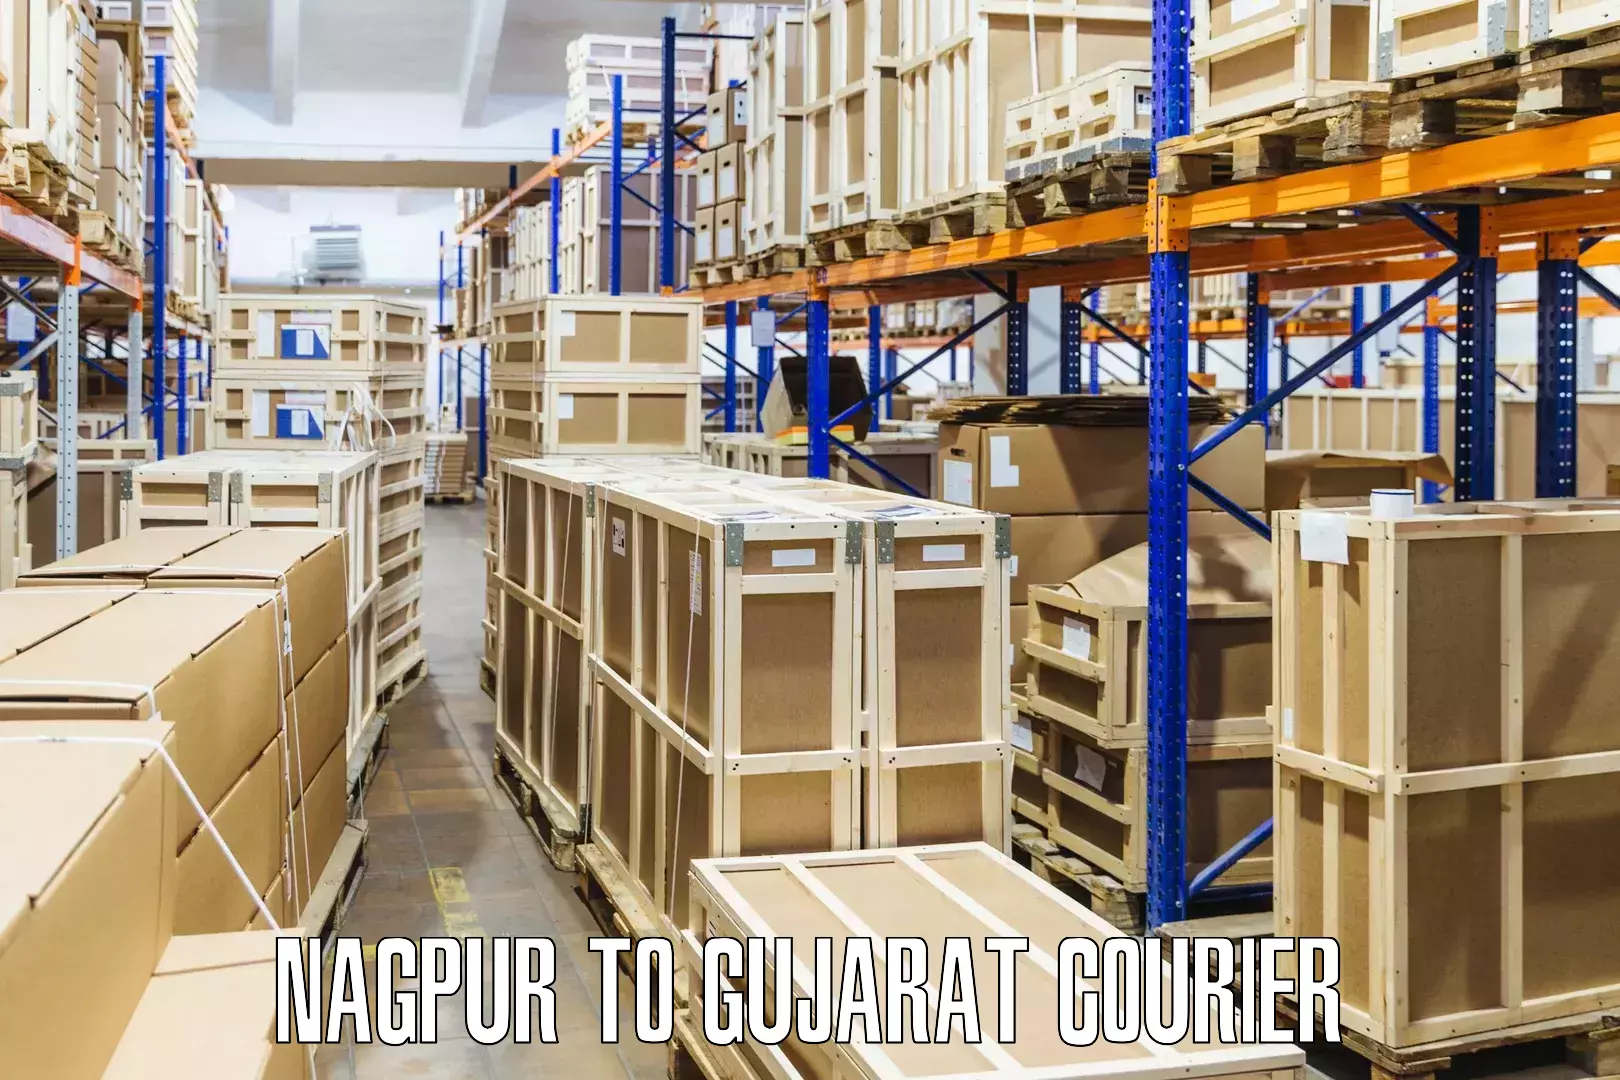 Courier service comparison Nagpur to IIT Gandhi Nagar